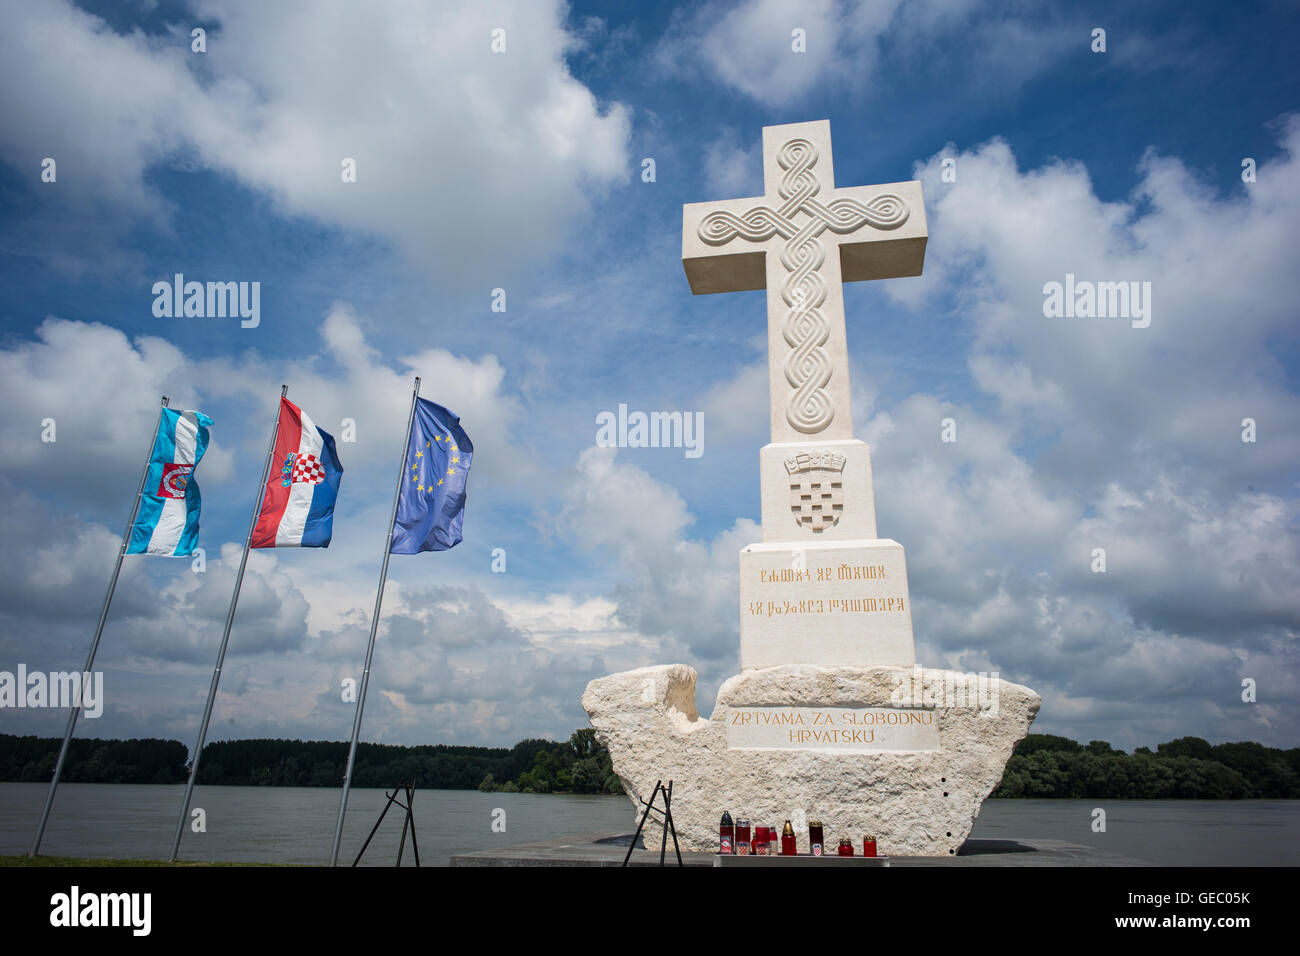 War memorial by the river Danube, Vukovar, Croatia Stock Photo